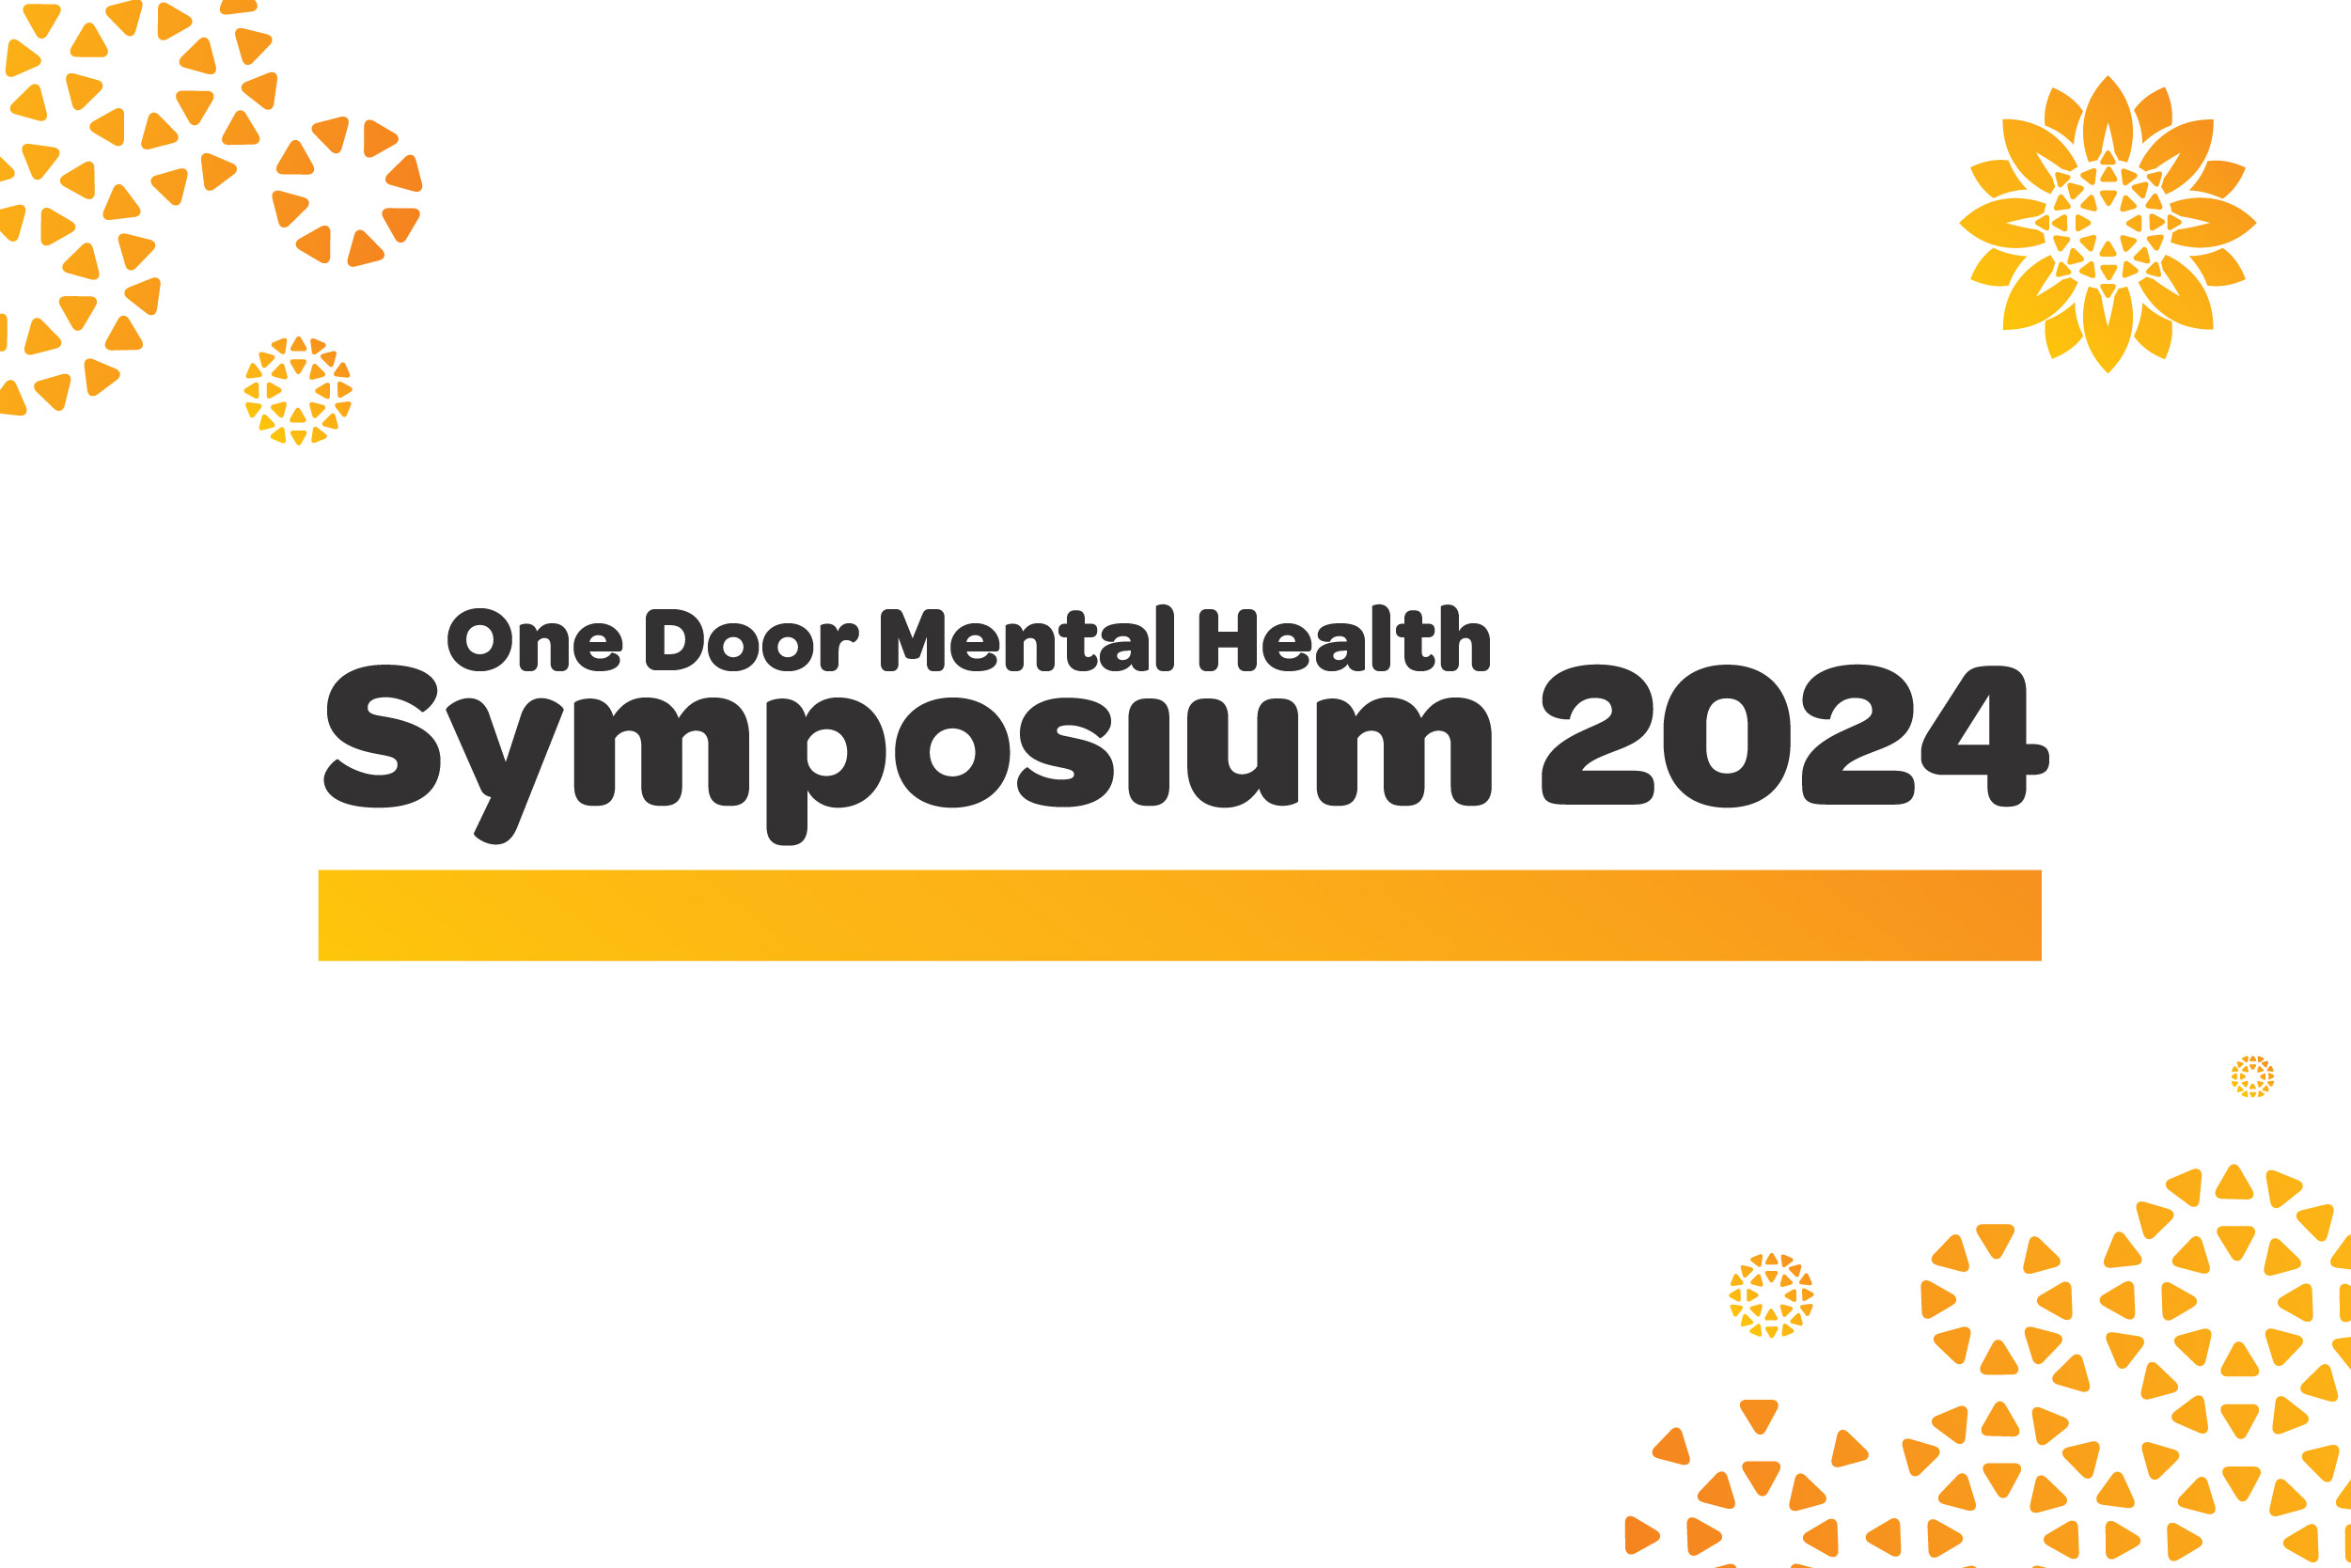 Symposium 2024